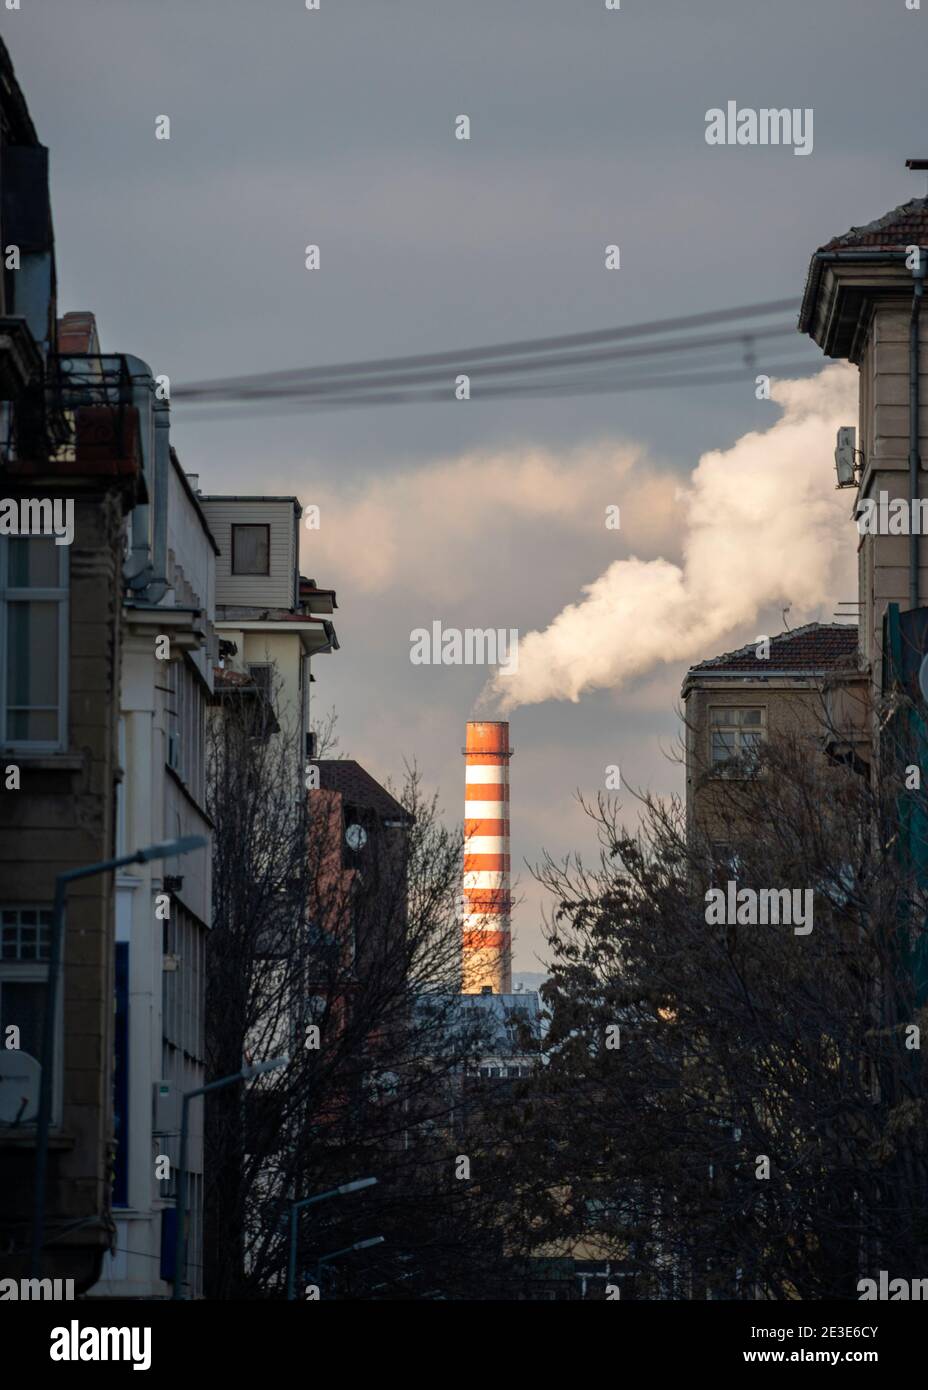 Sofia Bulgarien Osteuropa EU-Rauchschornsteine aus dem Thermalkraftwerk Sofia, die seit Januar 2021 Kamine über Wohngebäuden rauchen. Stockfoto